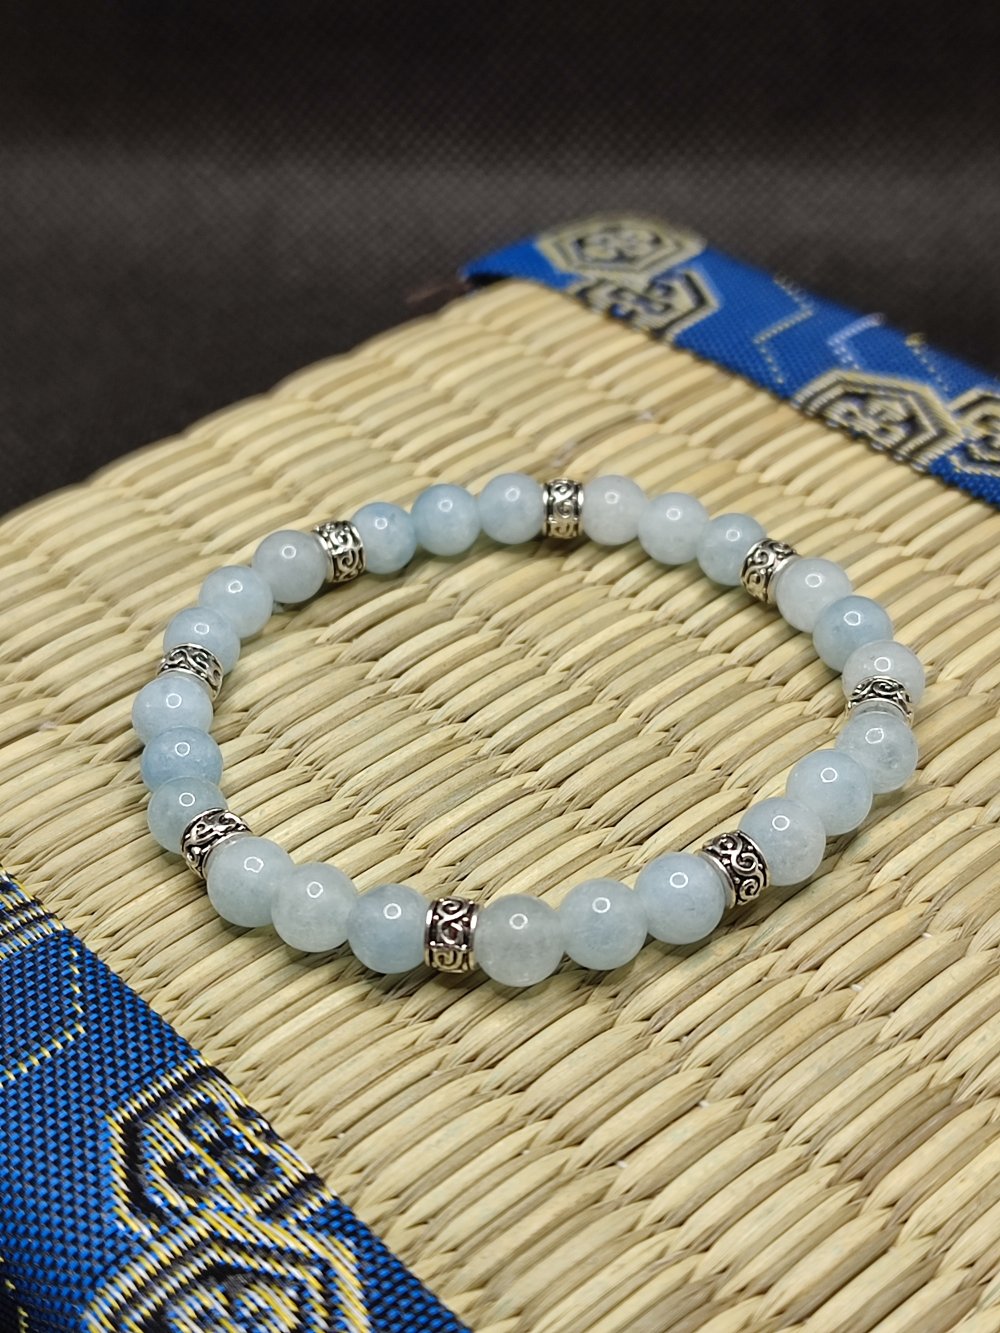 Bracelet oeil de chat bleu artisanal en perles naturelles de 8 mm, pierres  semi précieuses véritables, homme , femme - Un grand marché